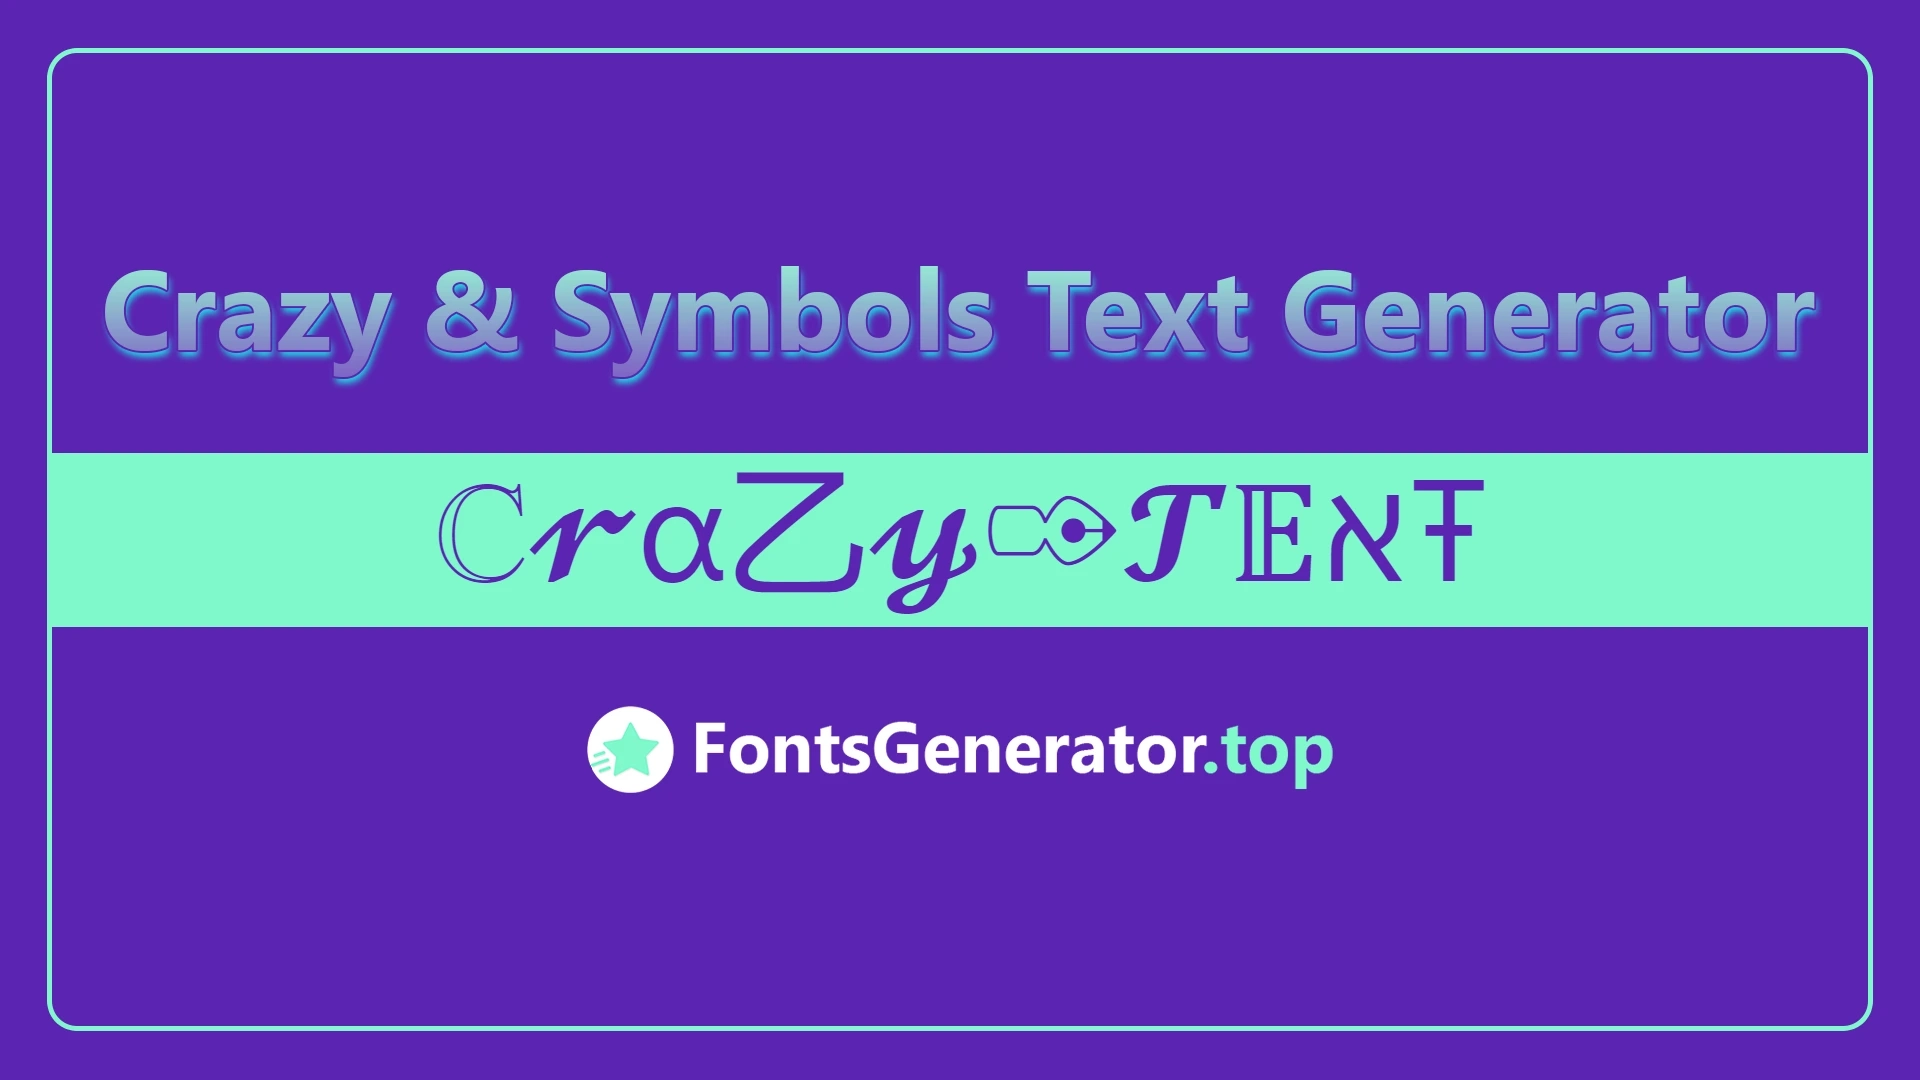 Crazy & Symbols Text Generator